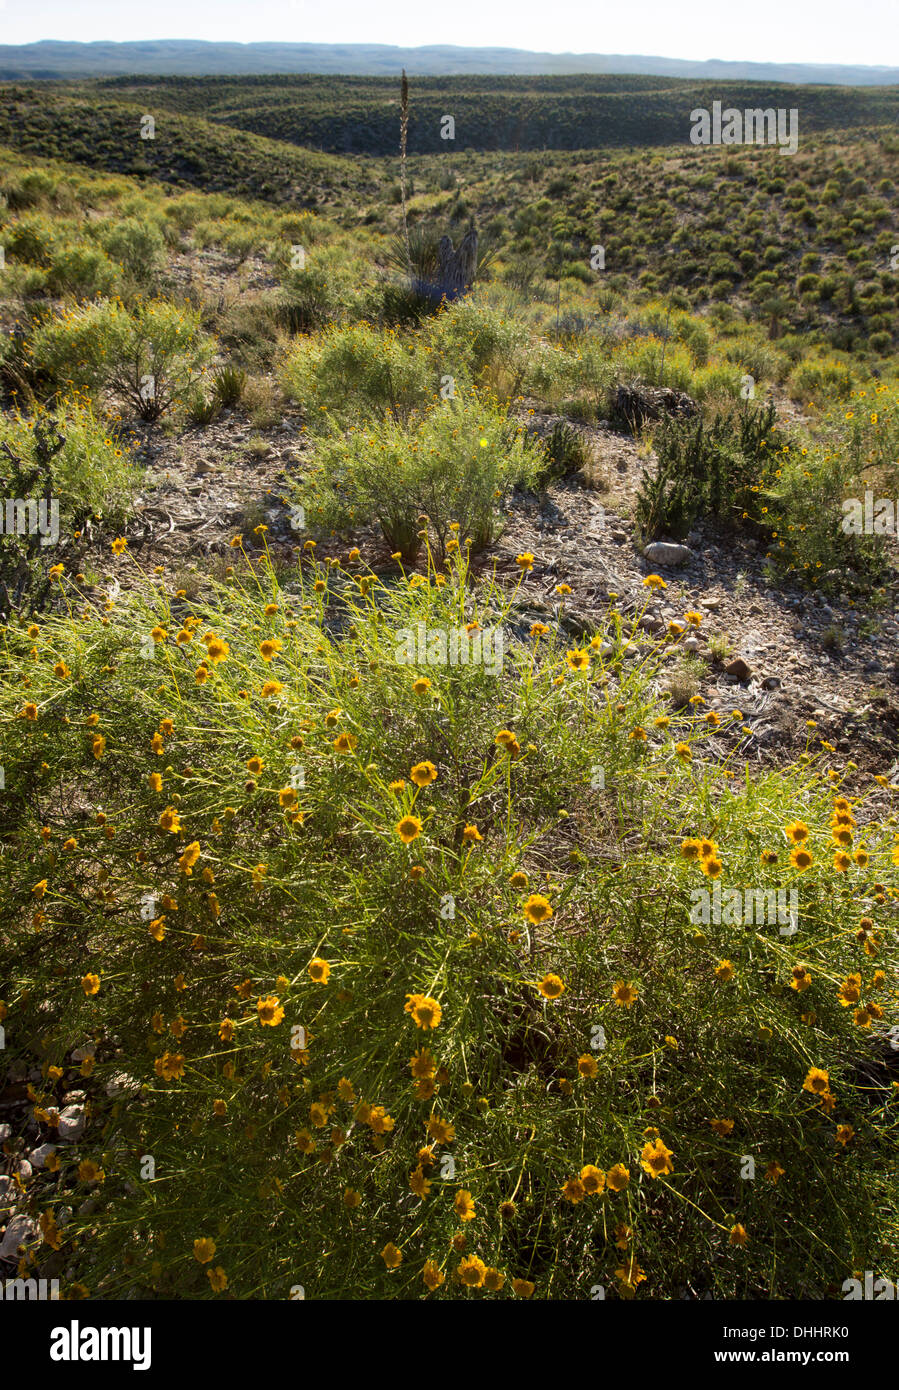 Wüste Ringelblumen (Baileya Multiradiata), ein Mitglied der Familie der Asteraceae, in West-Texas nahe dem Rio Grande Fluss. Stockfoto